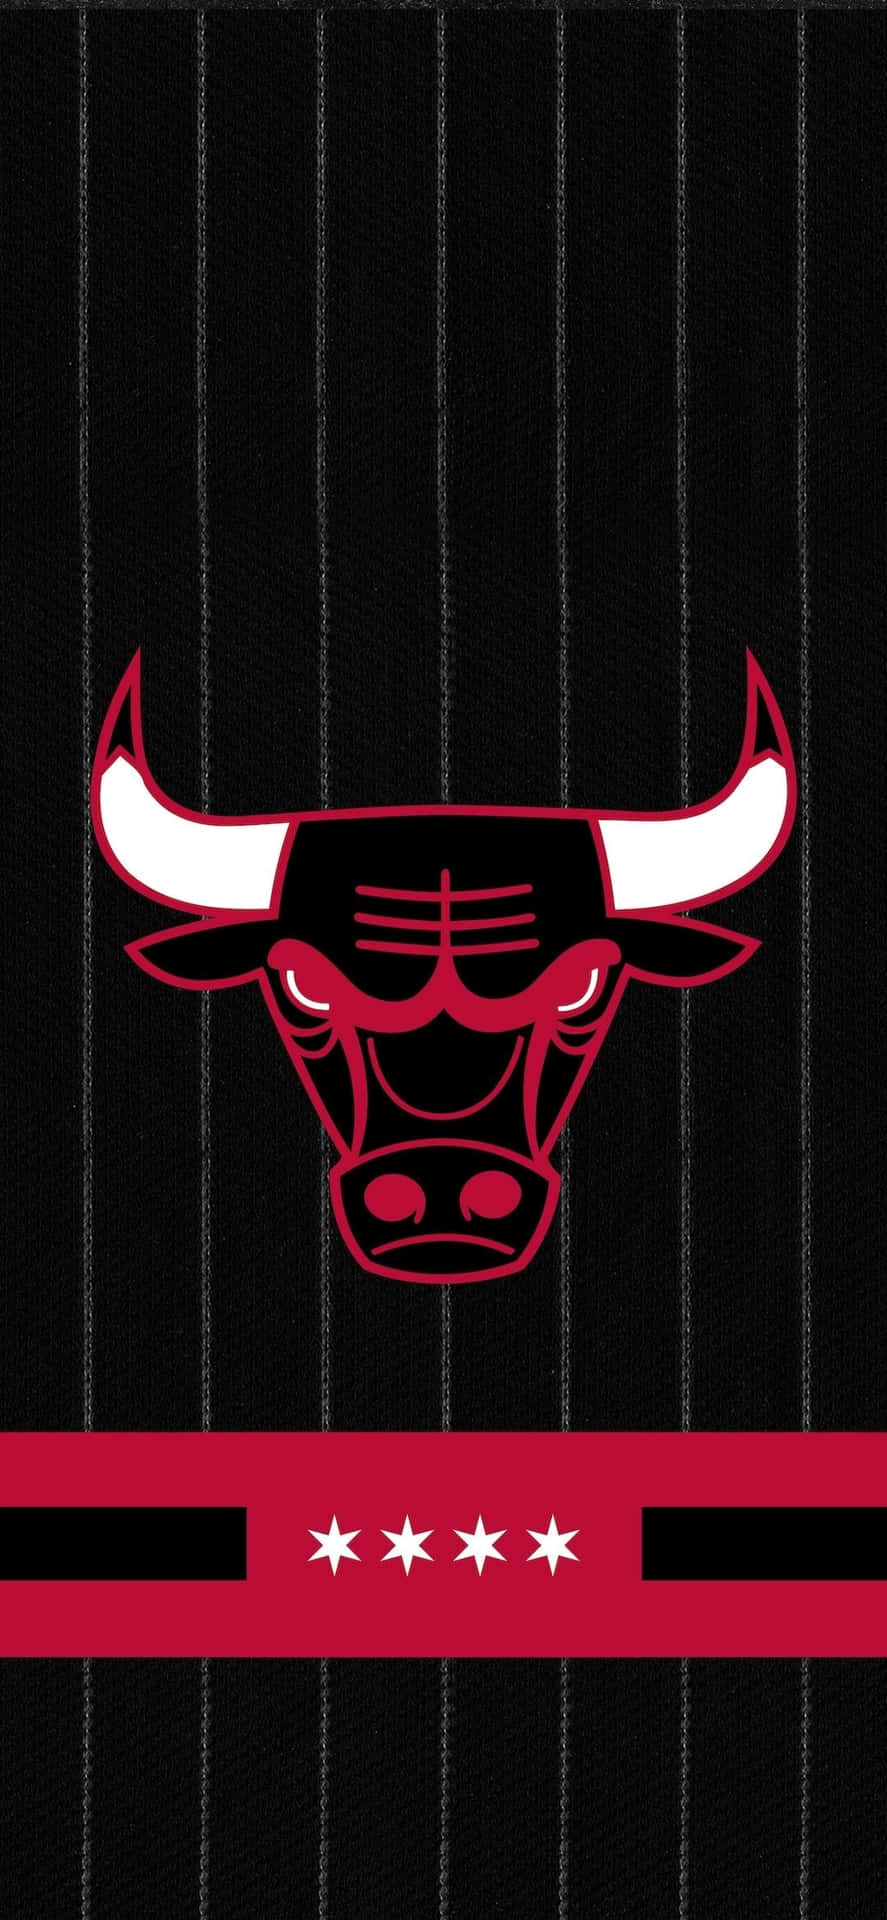 Chicago Bulls in Action Wallpaper